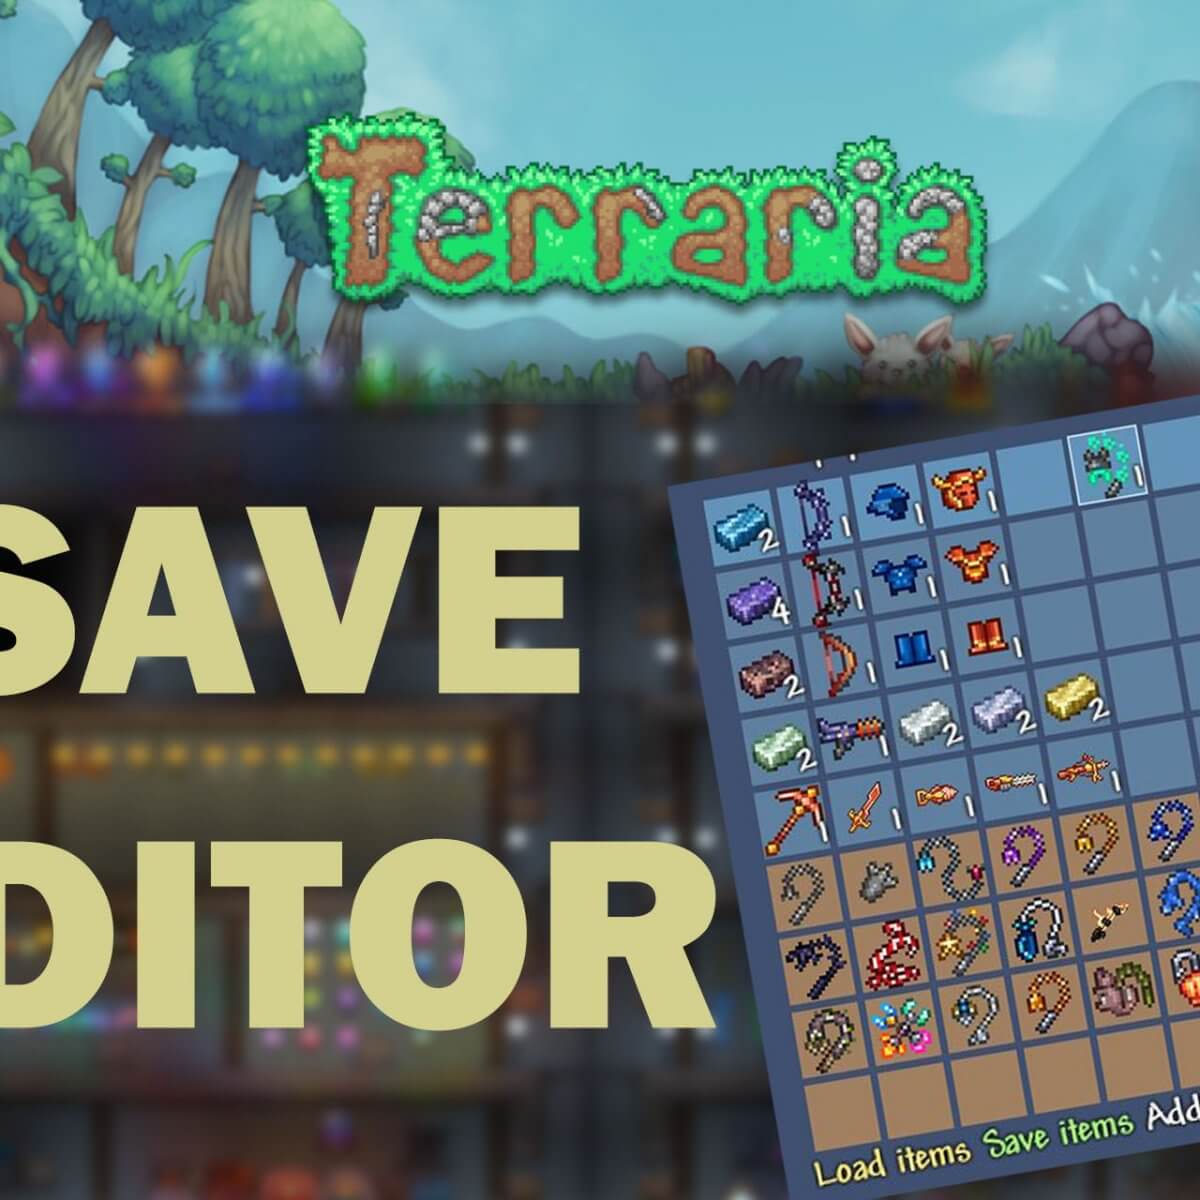 terraria download free windows 10 cog games.com